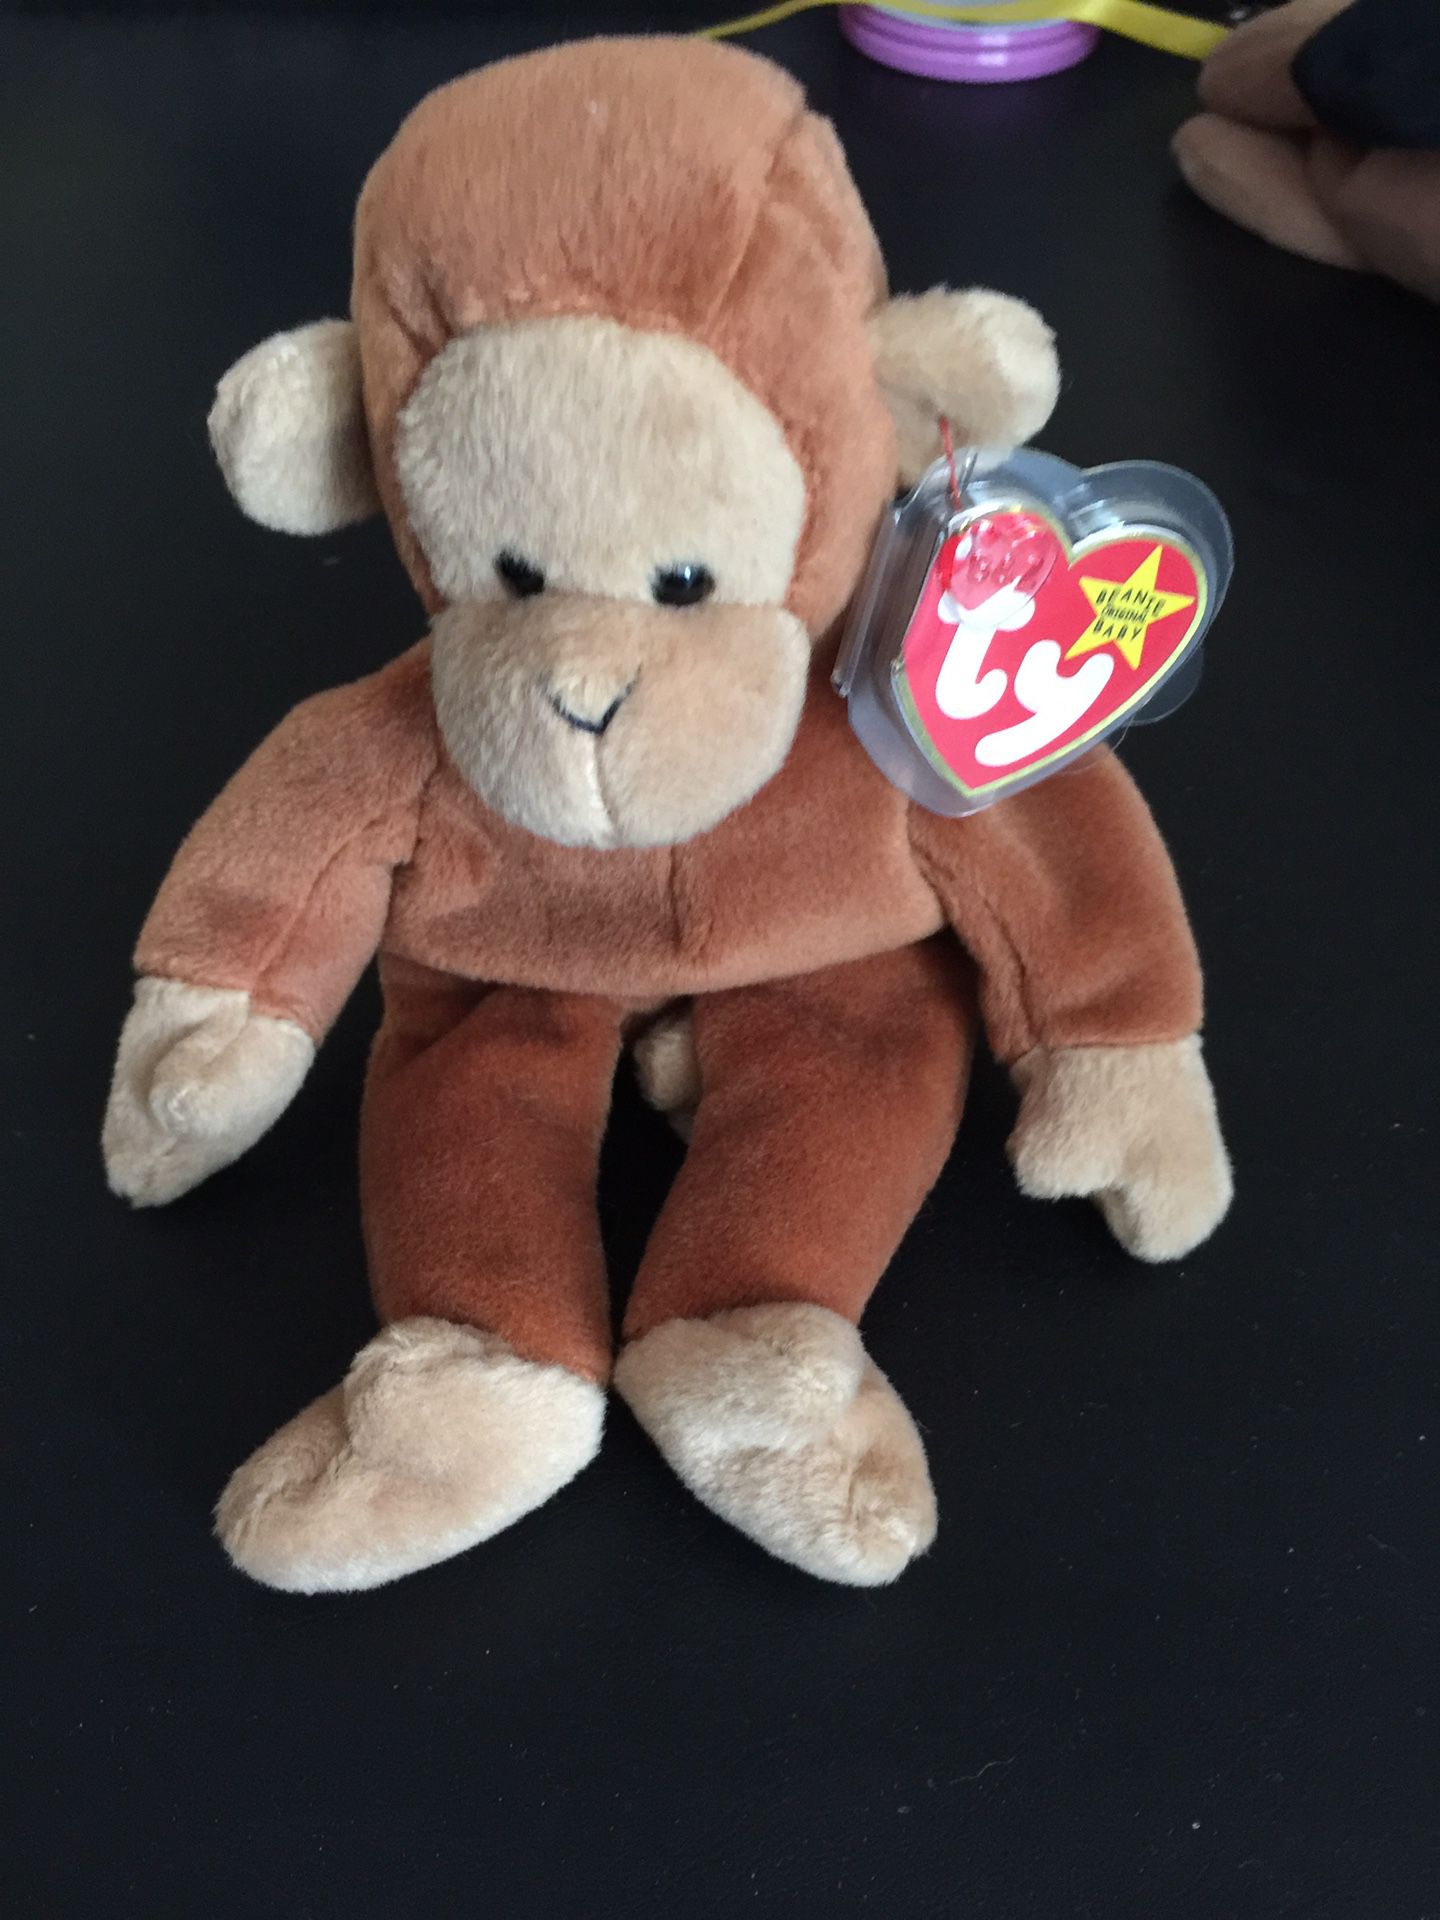 New Beanie Baby Monkey $1.00